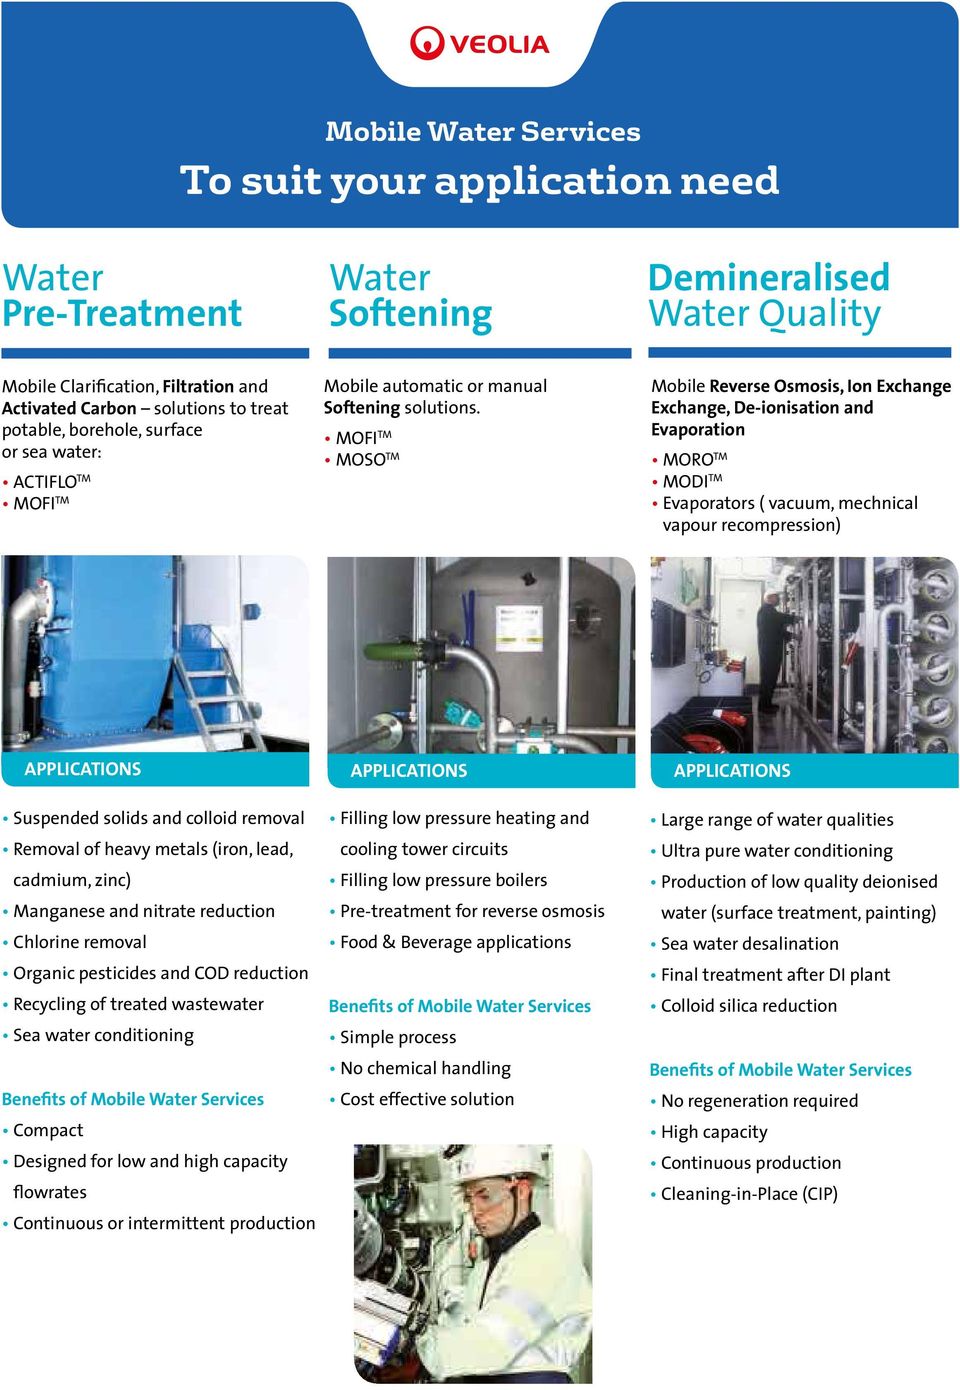 von von Trinkwasser, von Trinkwasser, Filtration and Brunnenwasser, Activated Carbon Oberflächen- Oberflächen- solutions und und to und treat Meerwasser.